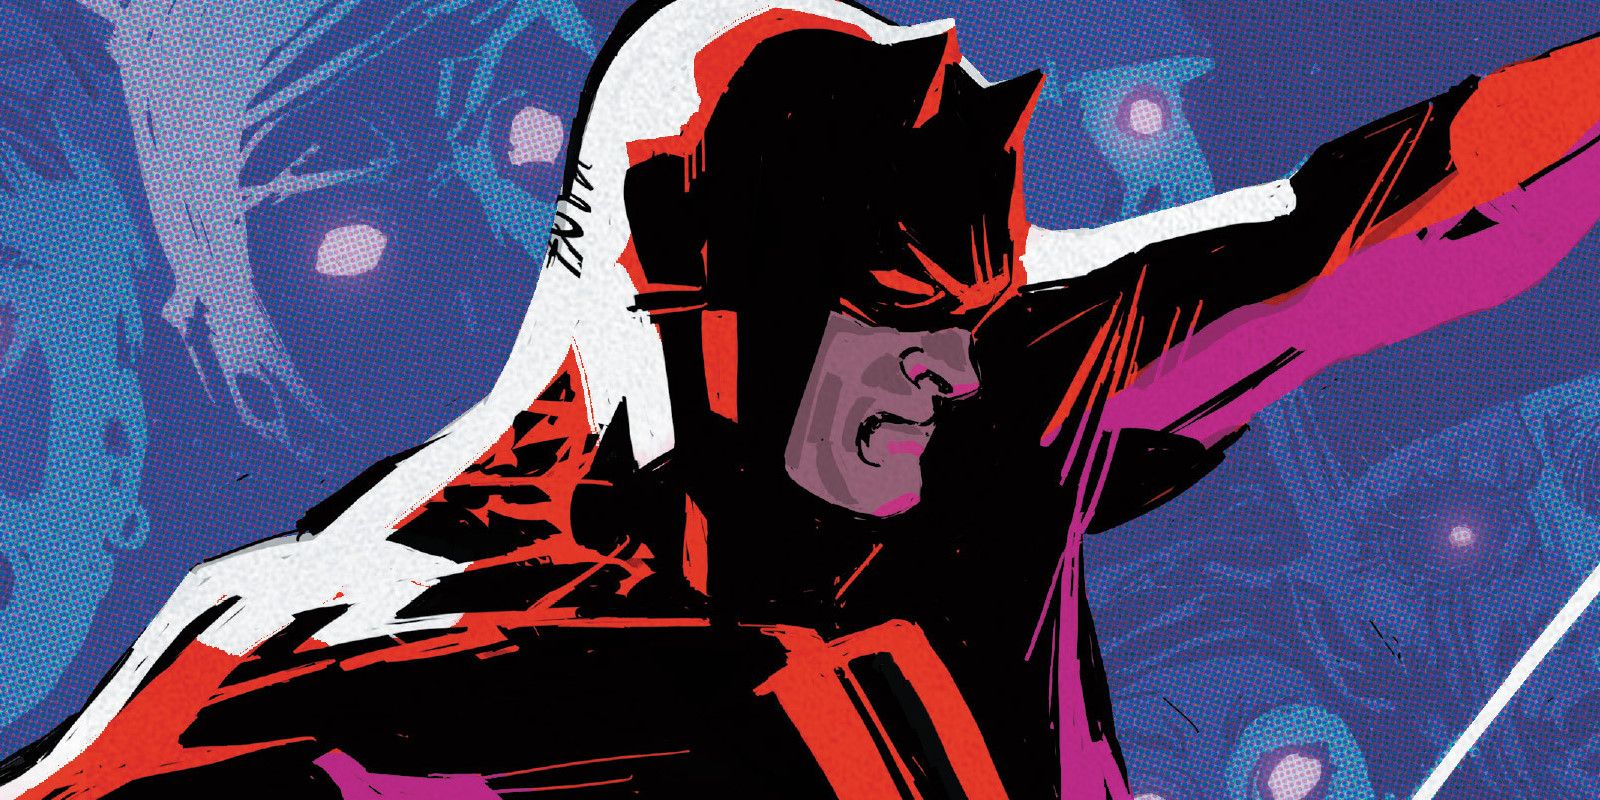 Daredevil swinging in comic book cover art